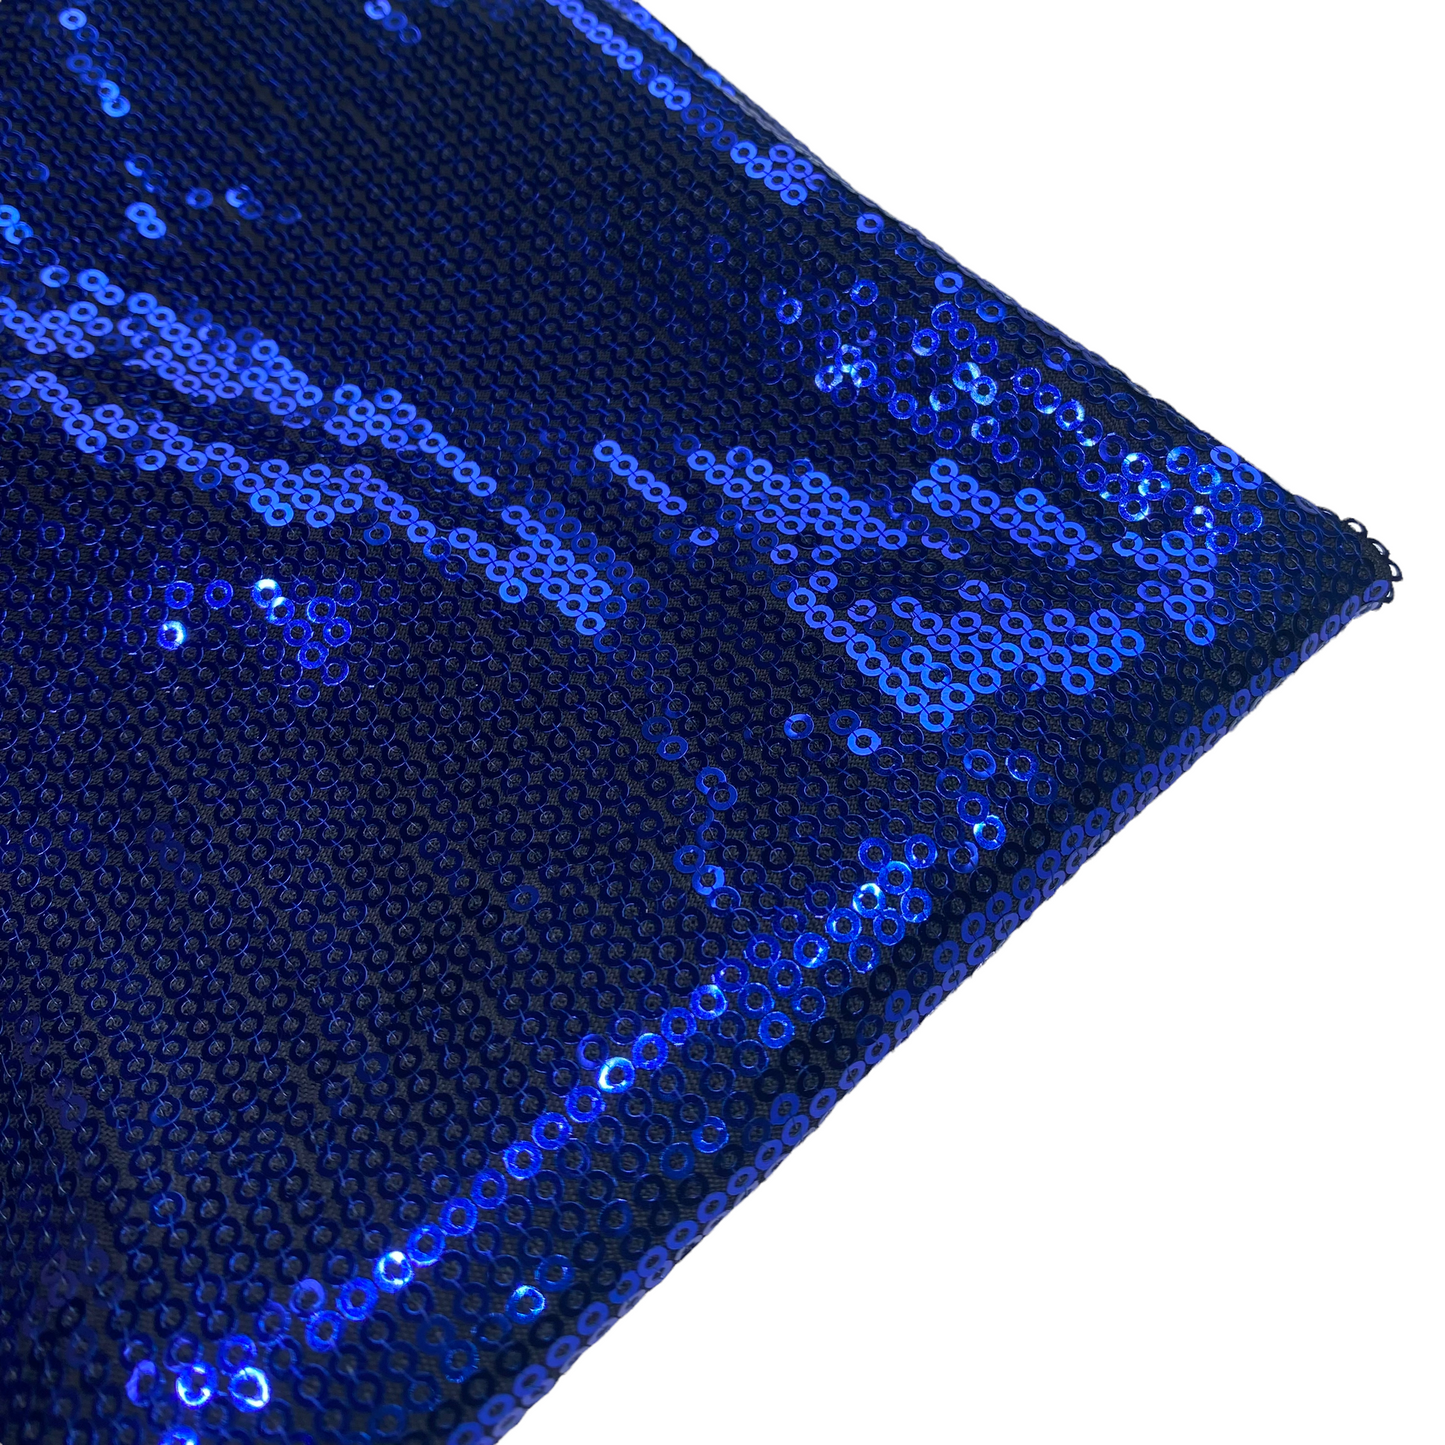 Sequin Knit - 56”- Blue/Black – King Textiles